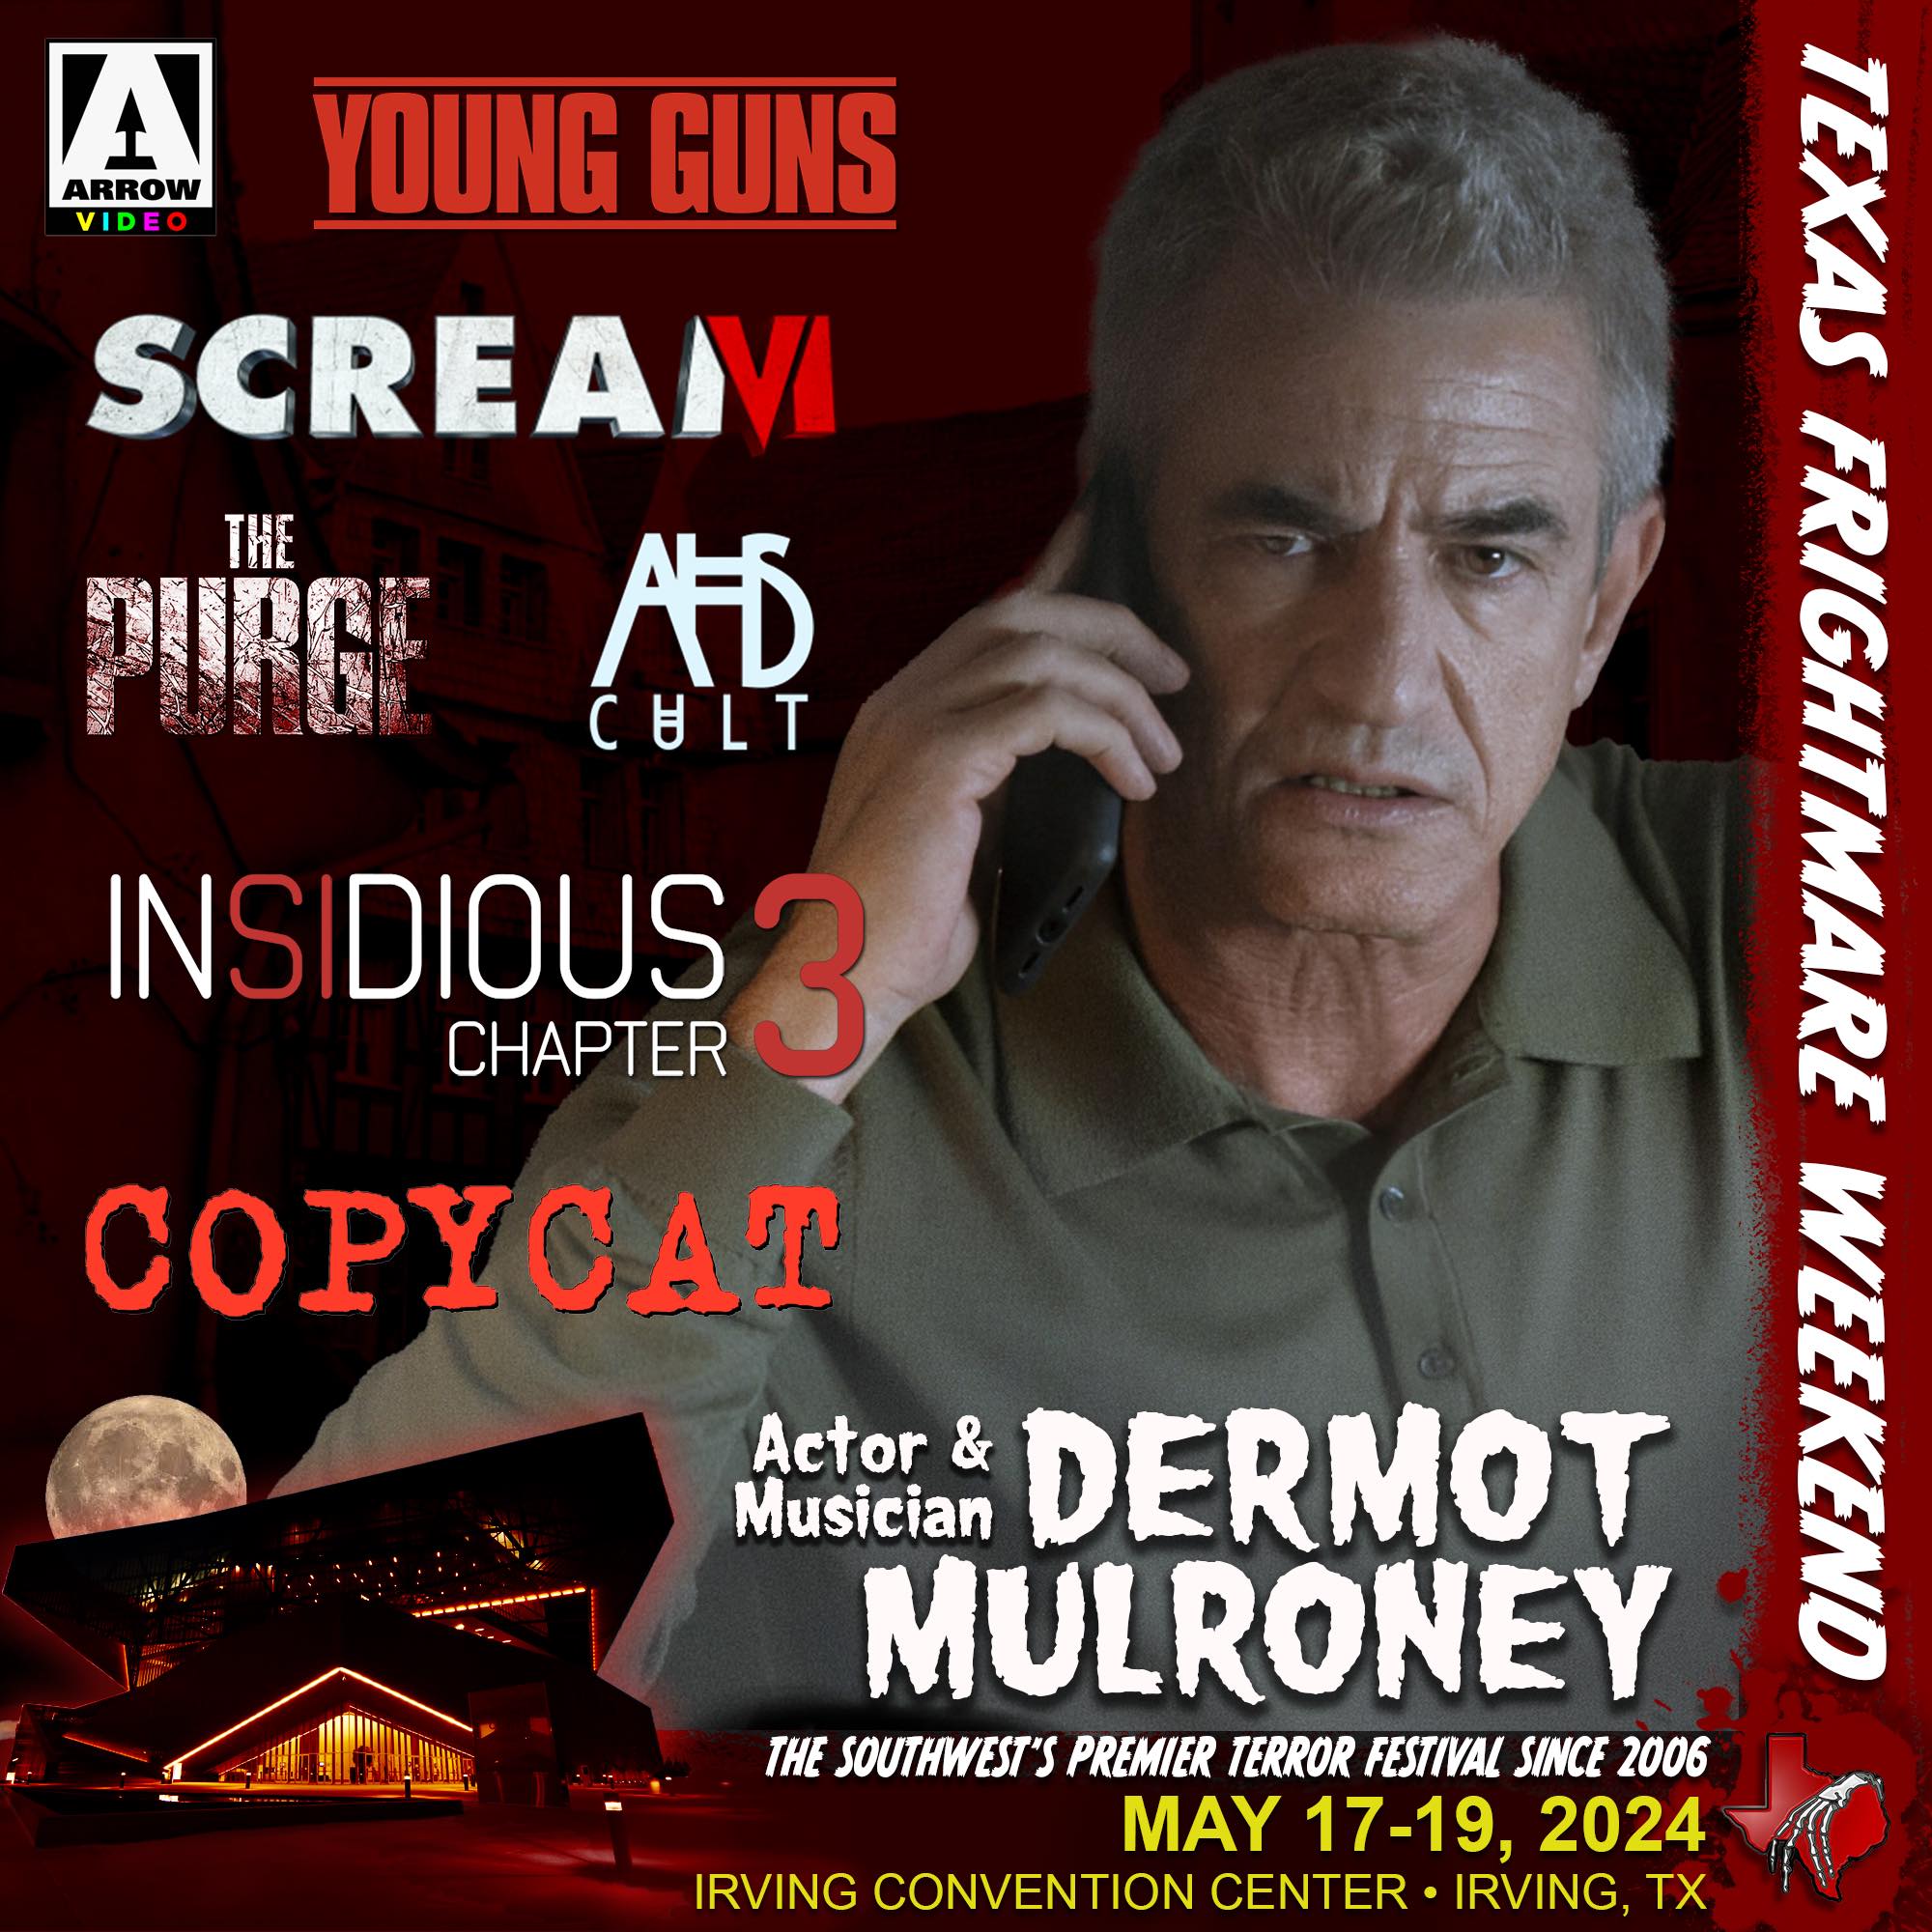 Meet Dermot Mulroney at Texas Frightmare Weekend